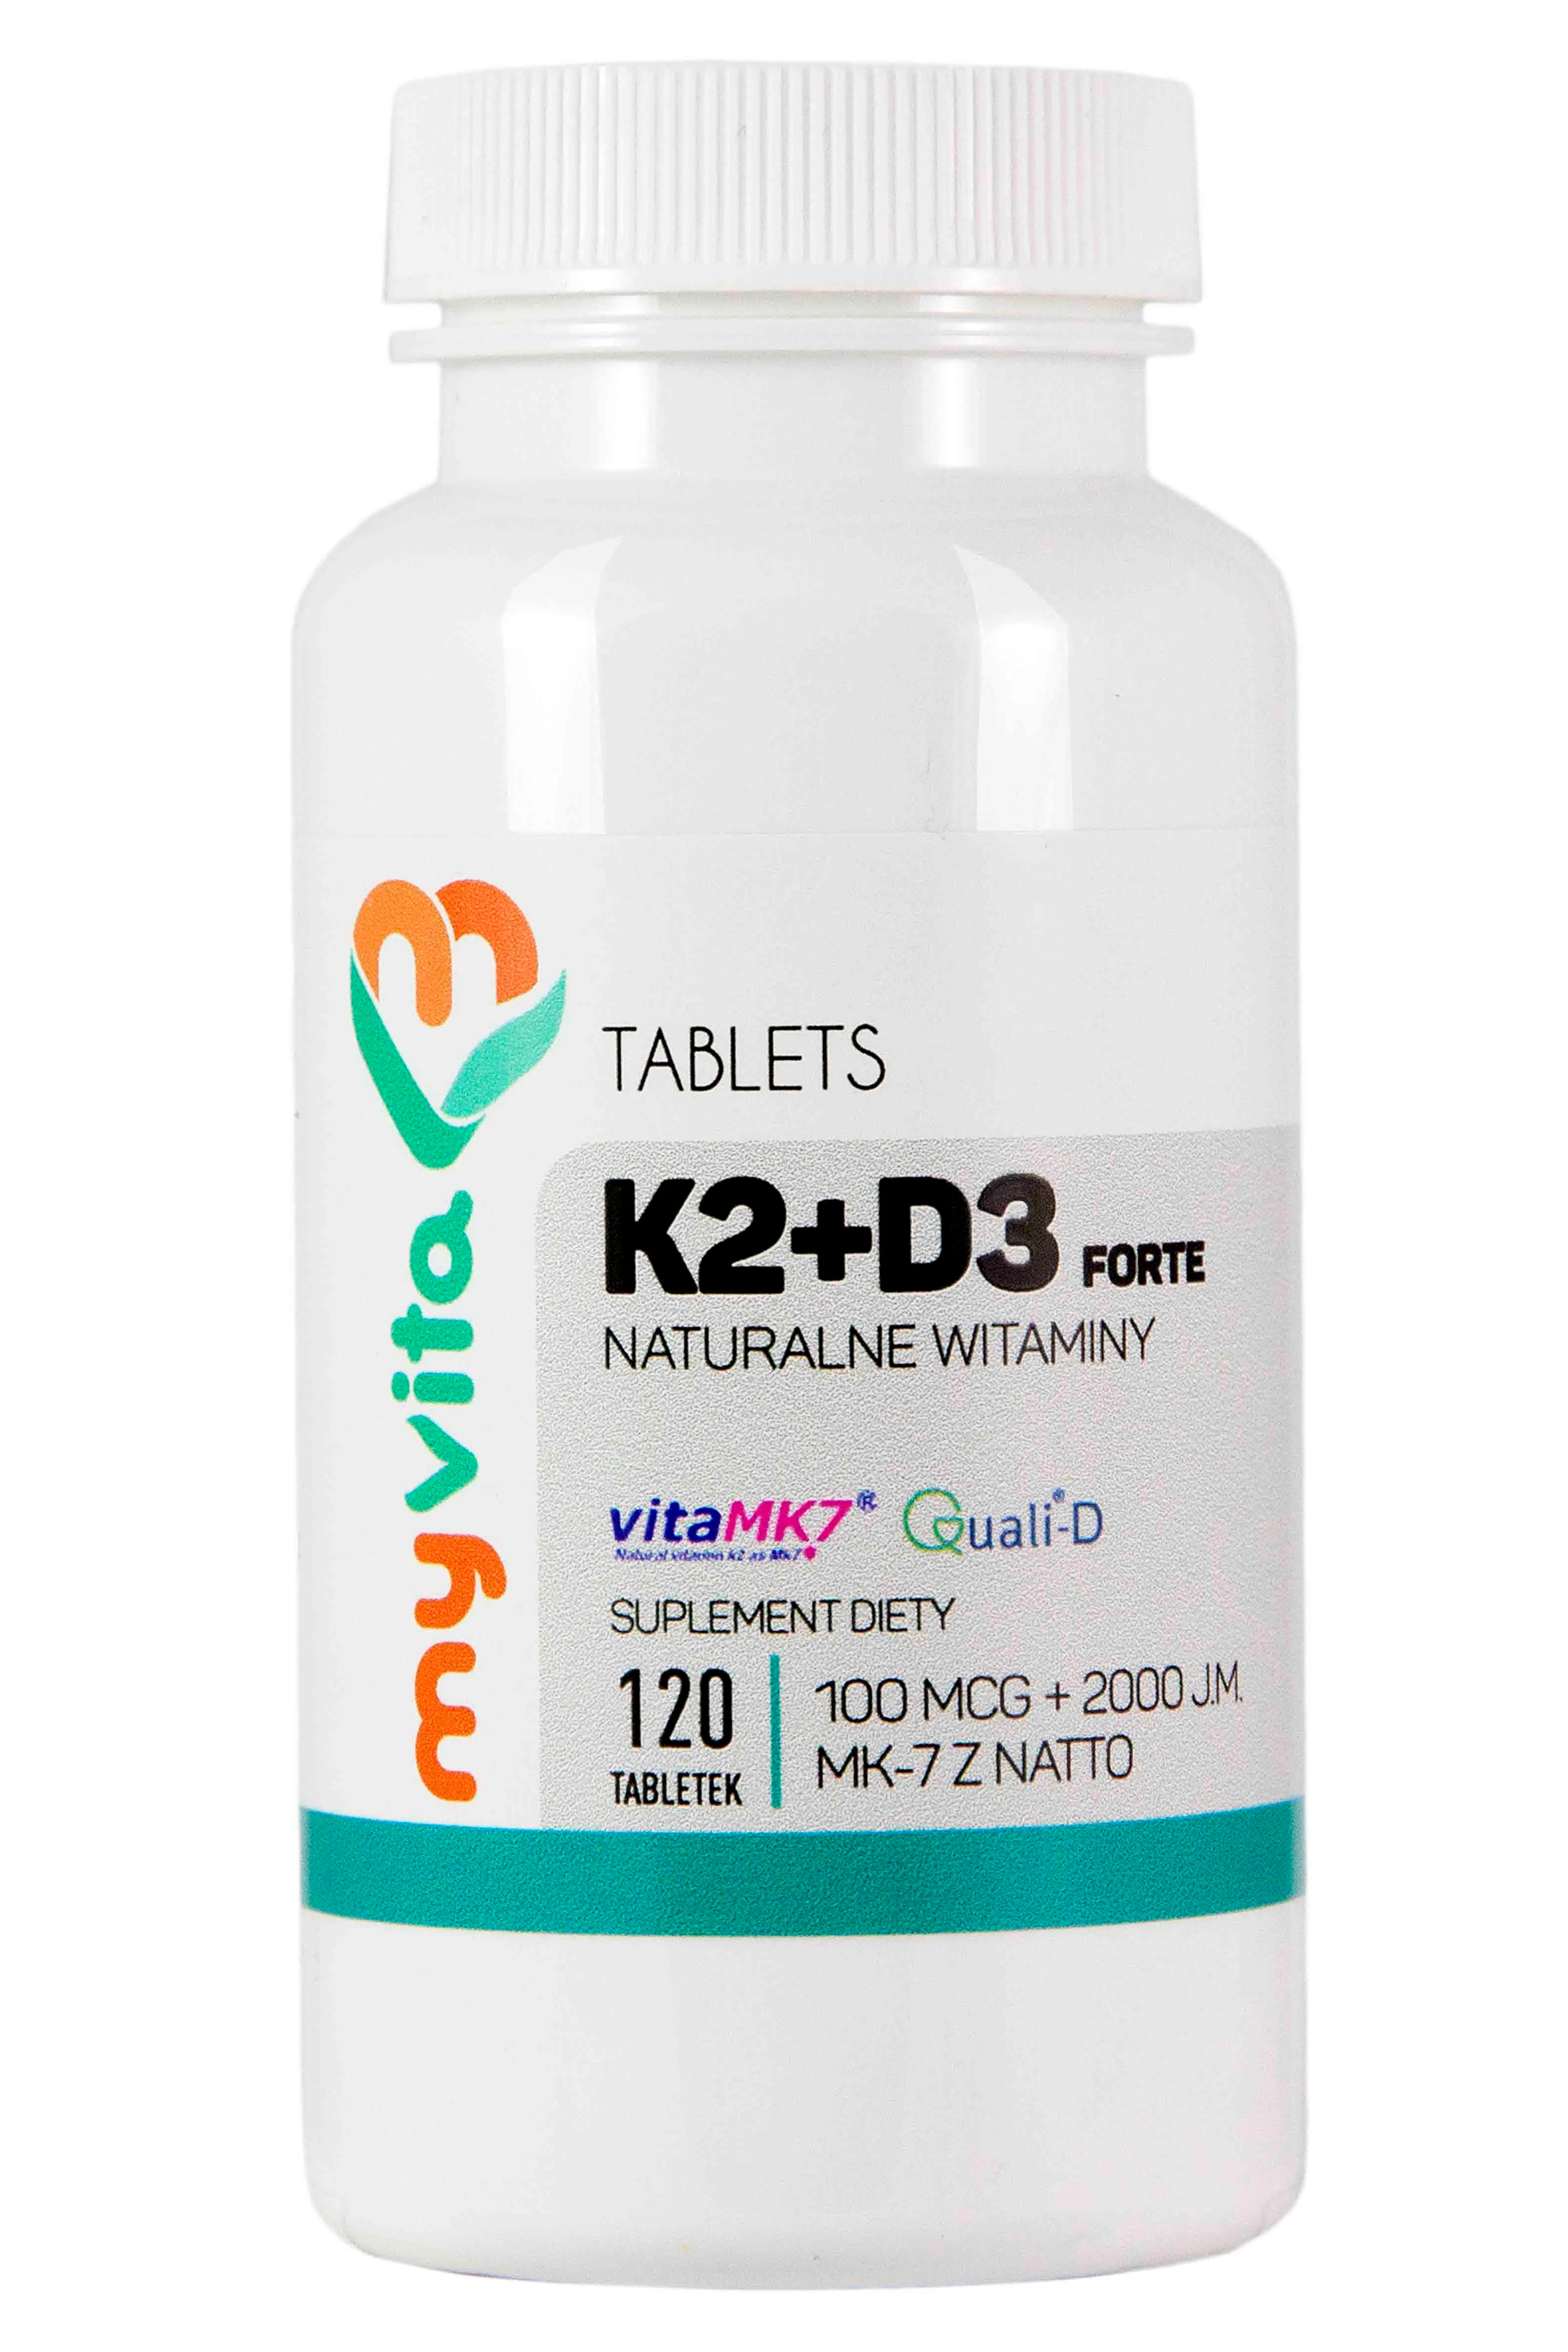 MyVita, Naturalna witamina K2+D3 100mcg + 2000IU Forte, suplement diety, 120 tabletek